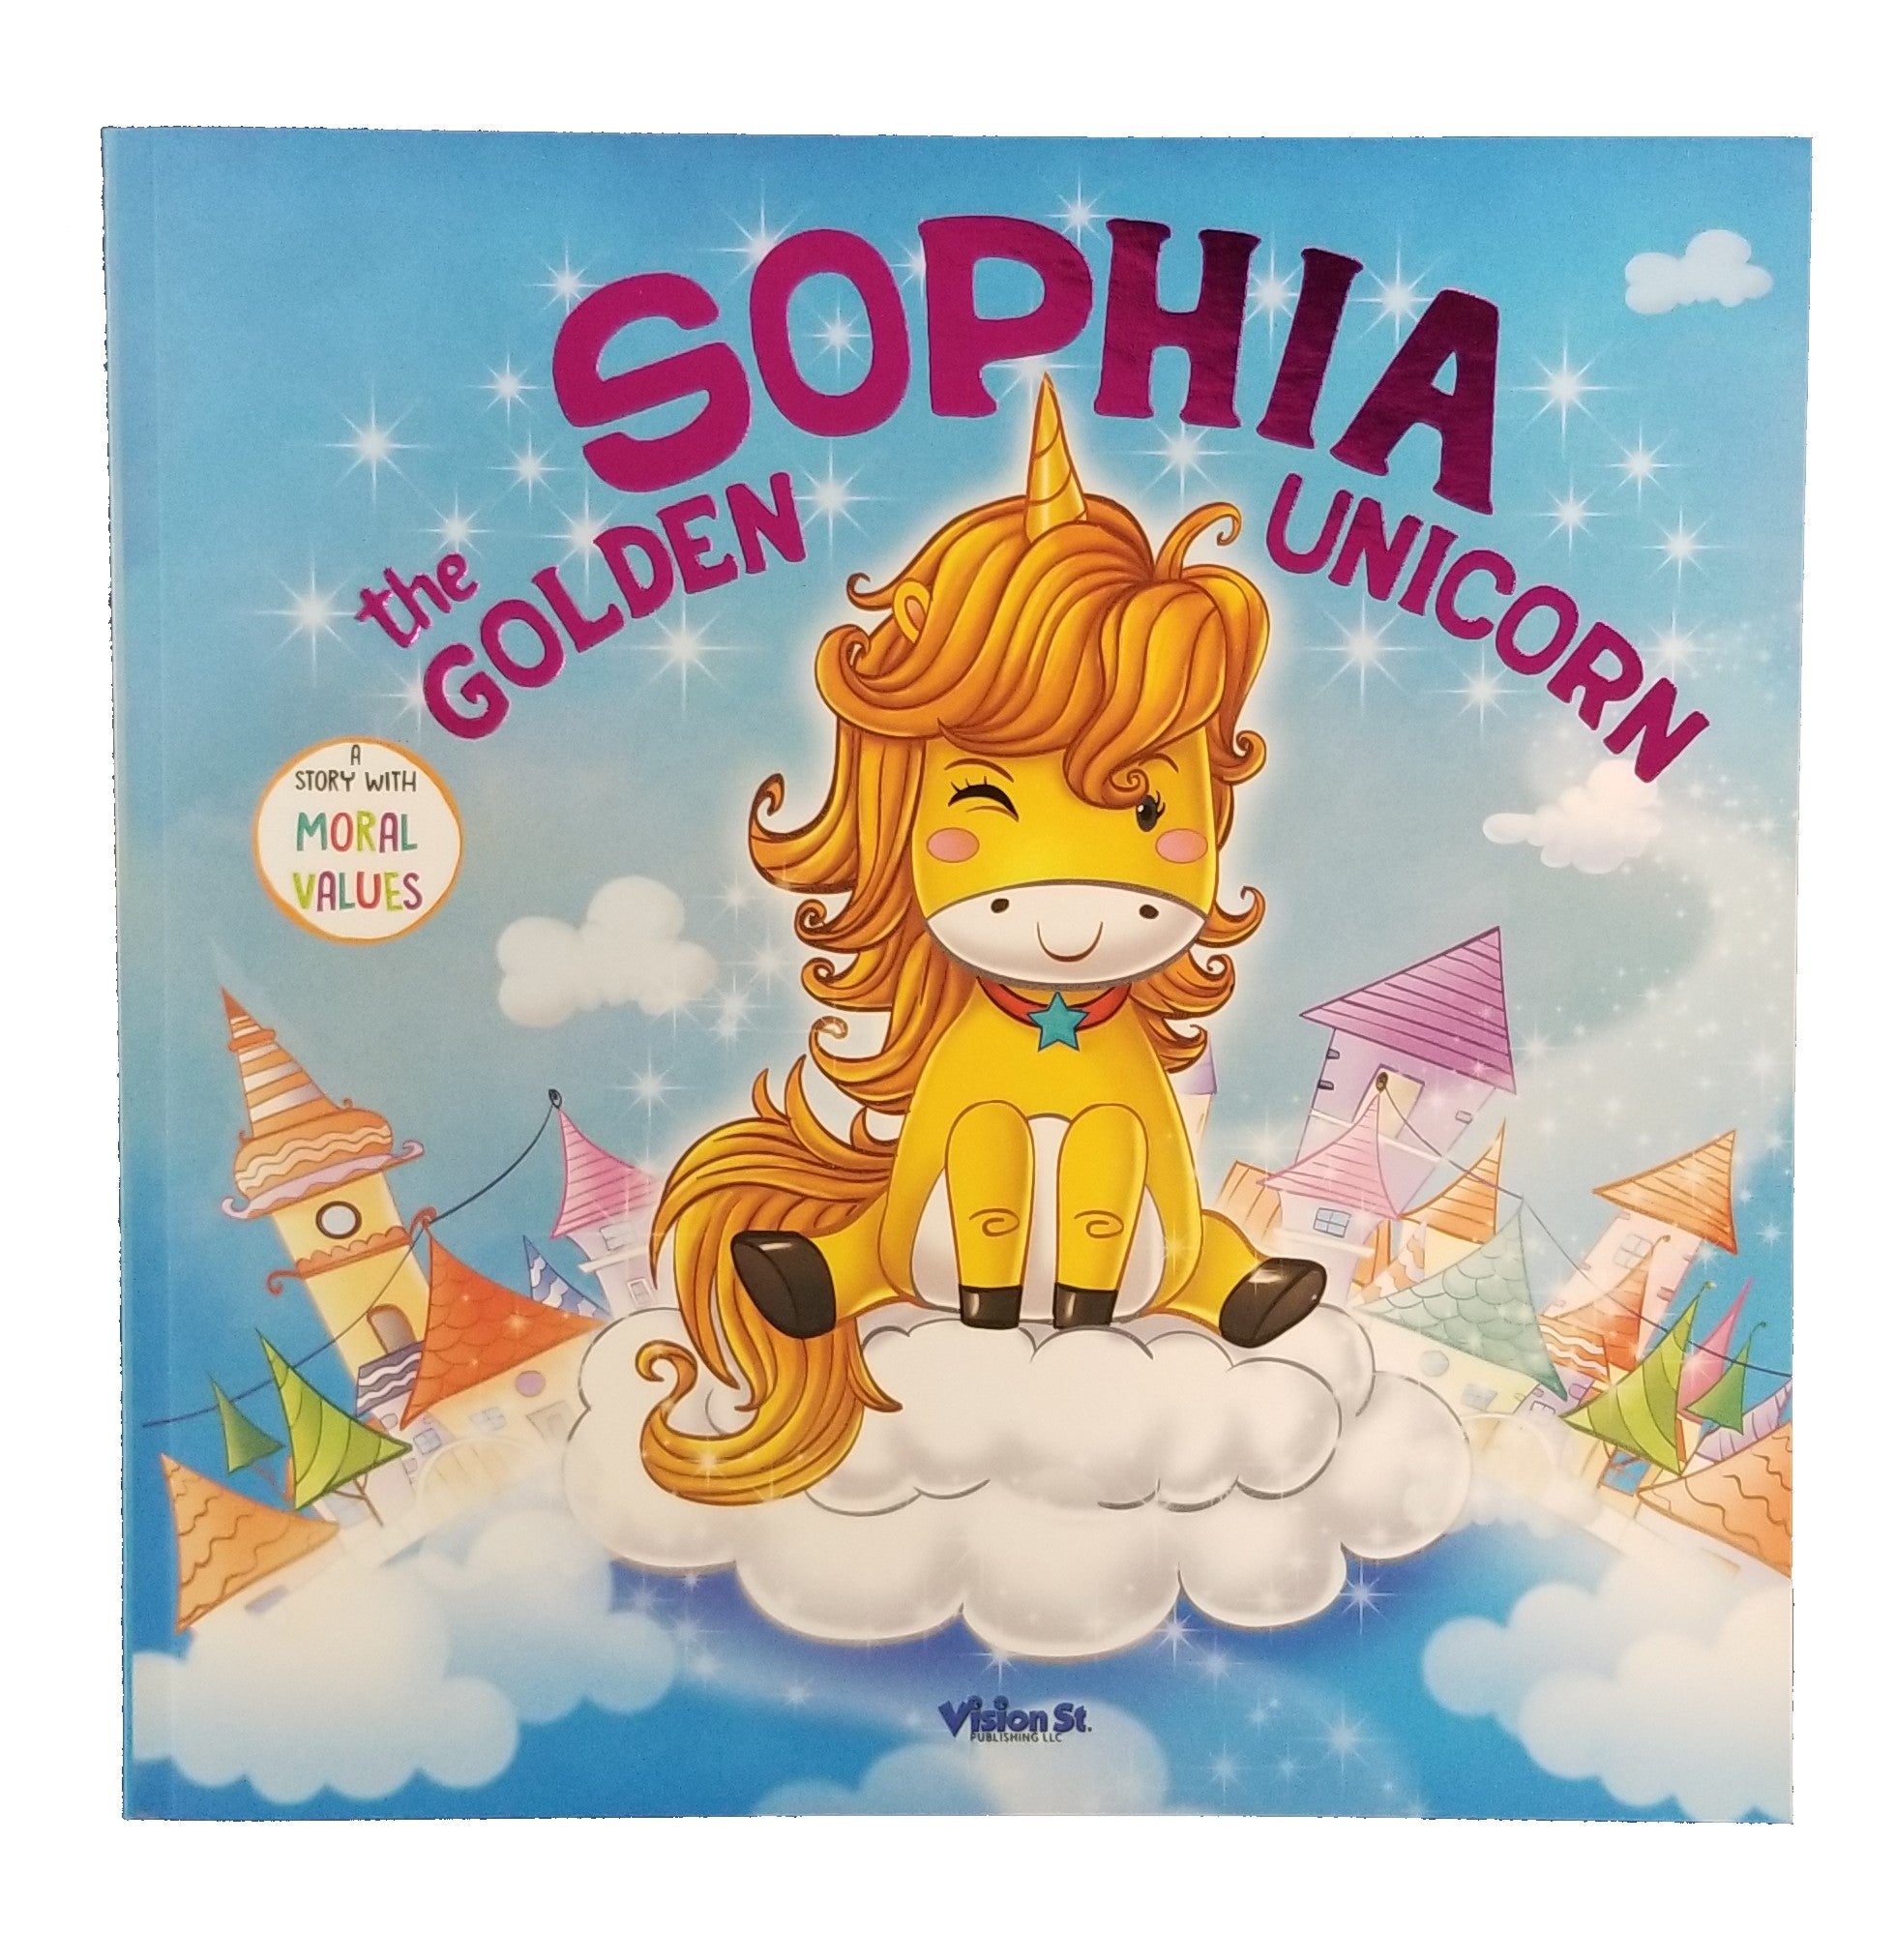 "Sophia the Golden Unicorn" Children's Story Book